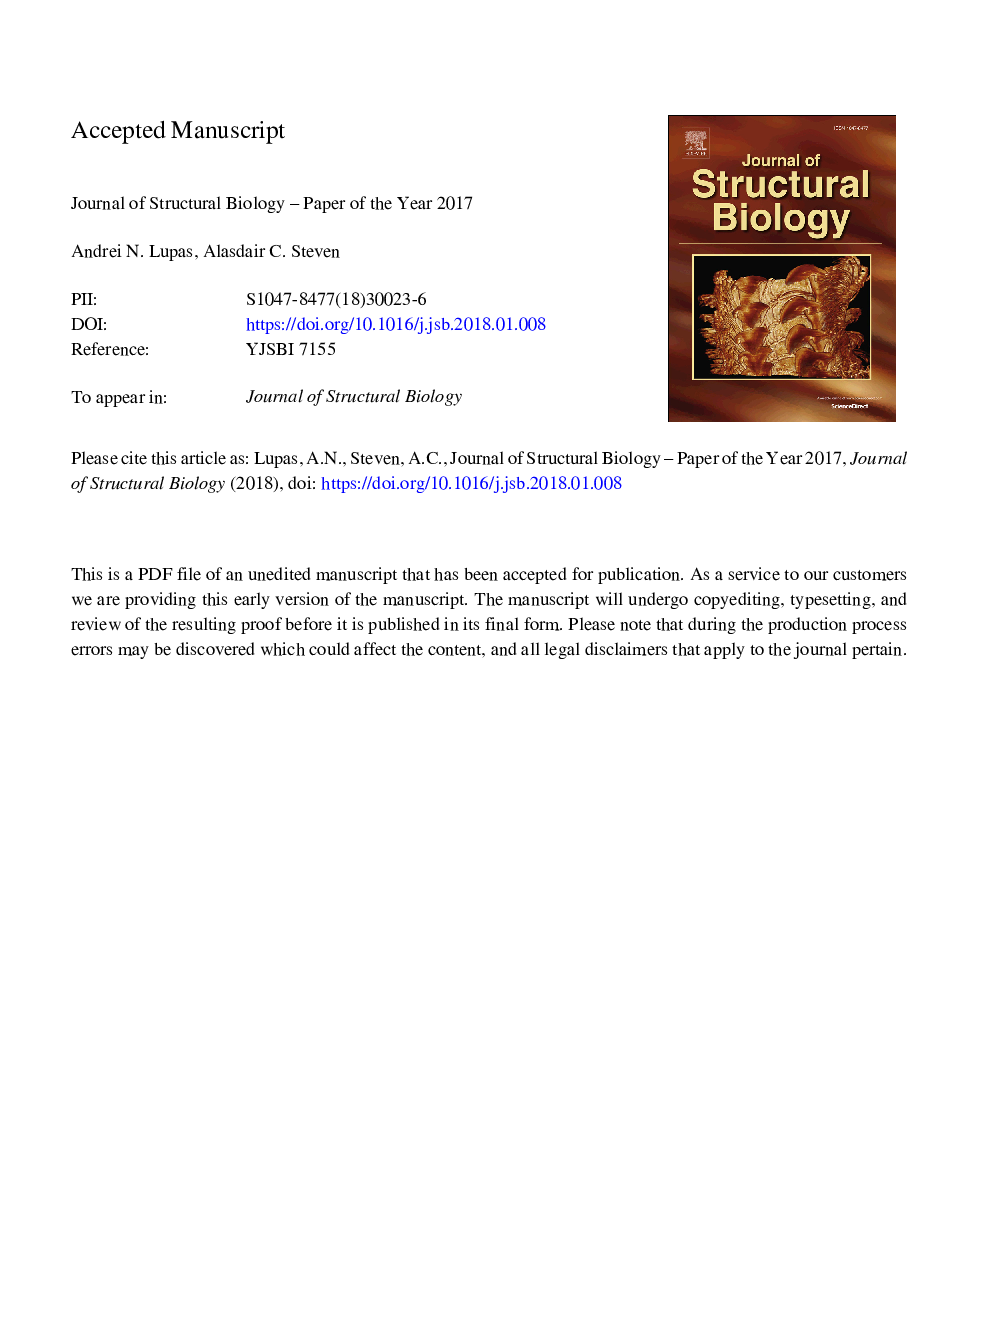 مجله زیست شناسی ساختاری - مقاله سال 2017 